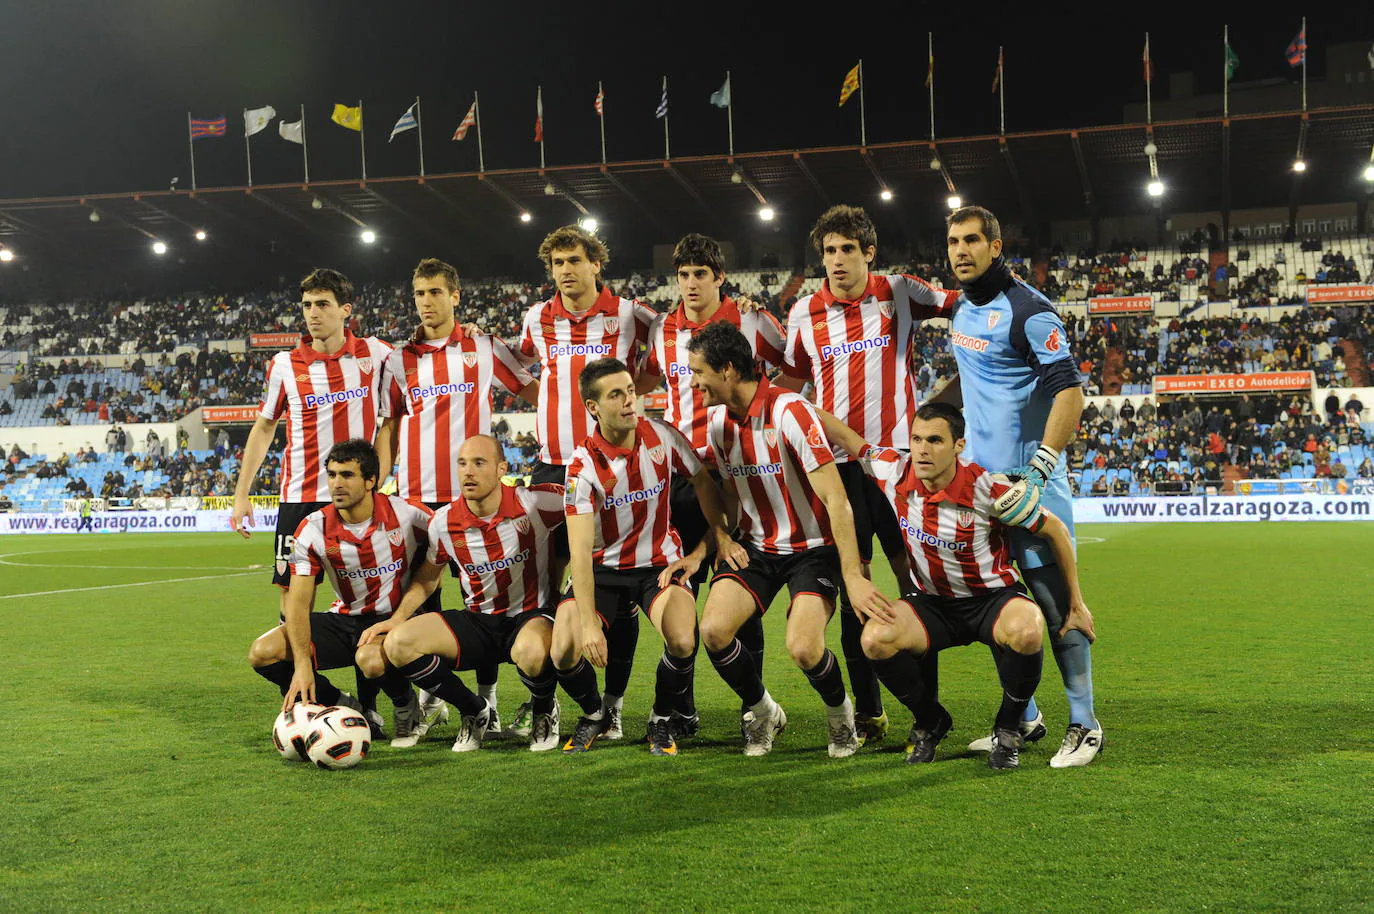 La alineación del Athletic en marzo de 2011 en La Romareda en la que no hubo ningún vizcaíno.